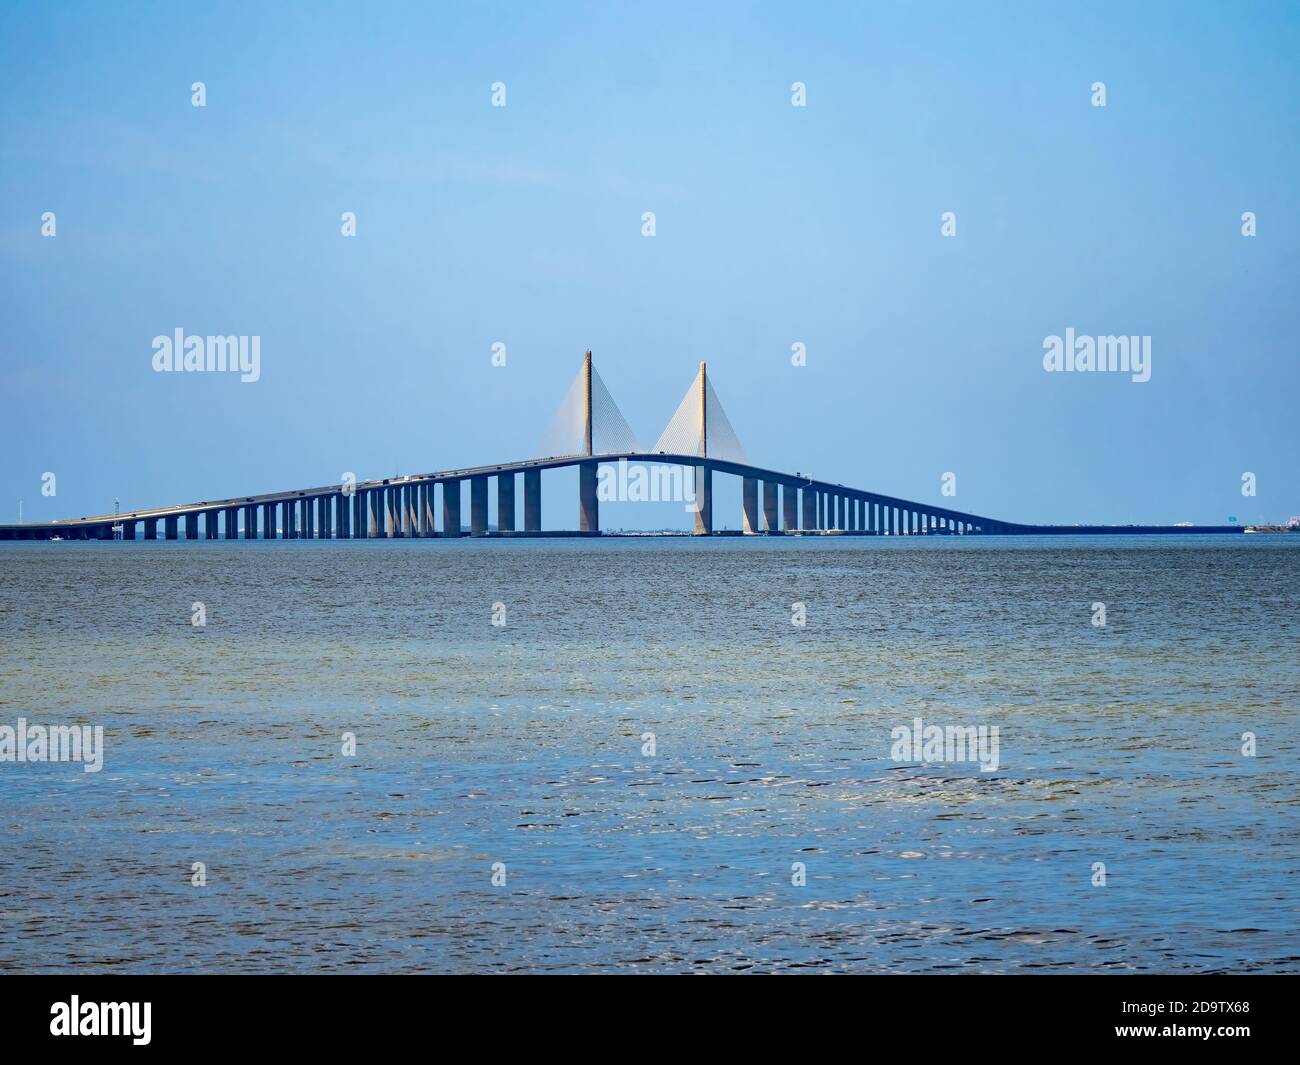 Le pont Bob Graham Sunshine Skyway Bridge enjambant la baie de Tampa inférieure reliant Saint-Pétersbourg, Floride à Terra CEIA Floride aux États-Unis Banque D'Images